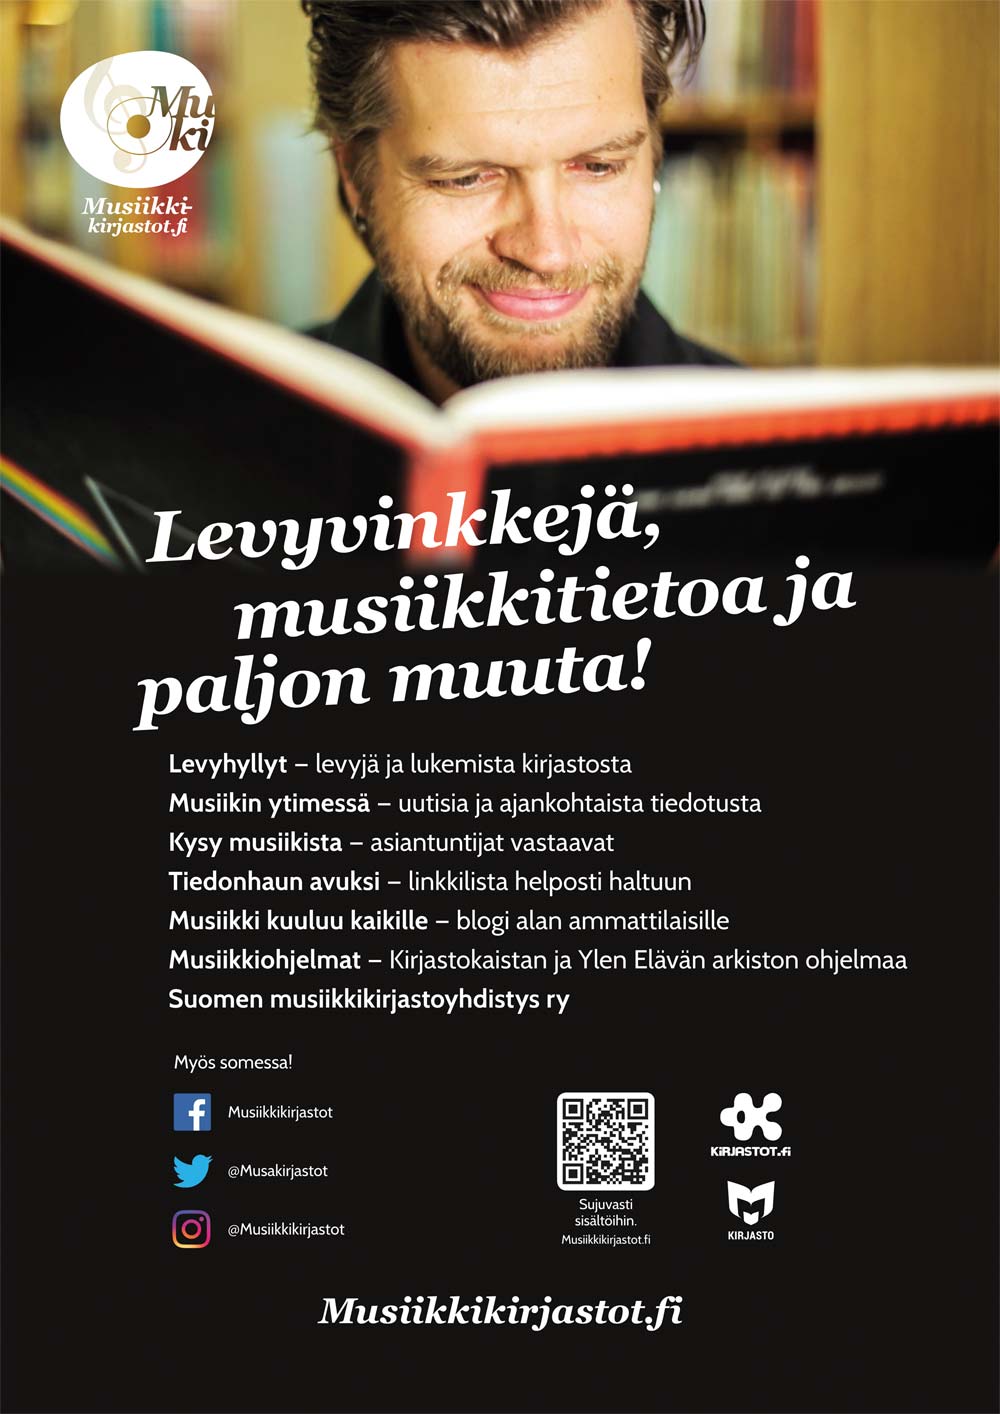 Musiikkikirjastot.fi:n juliste on ladattavissa Materiaalipankista.